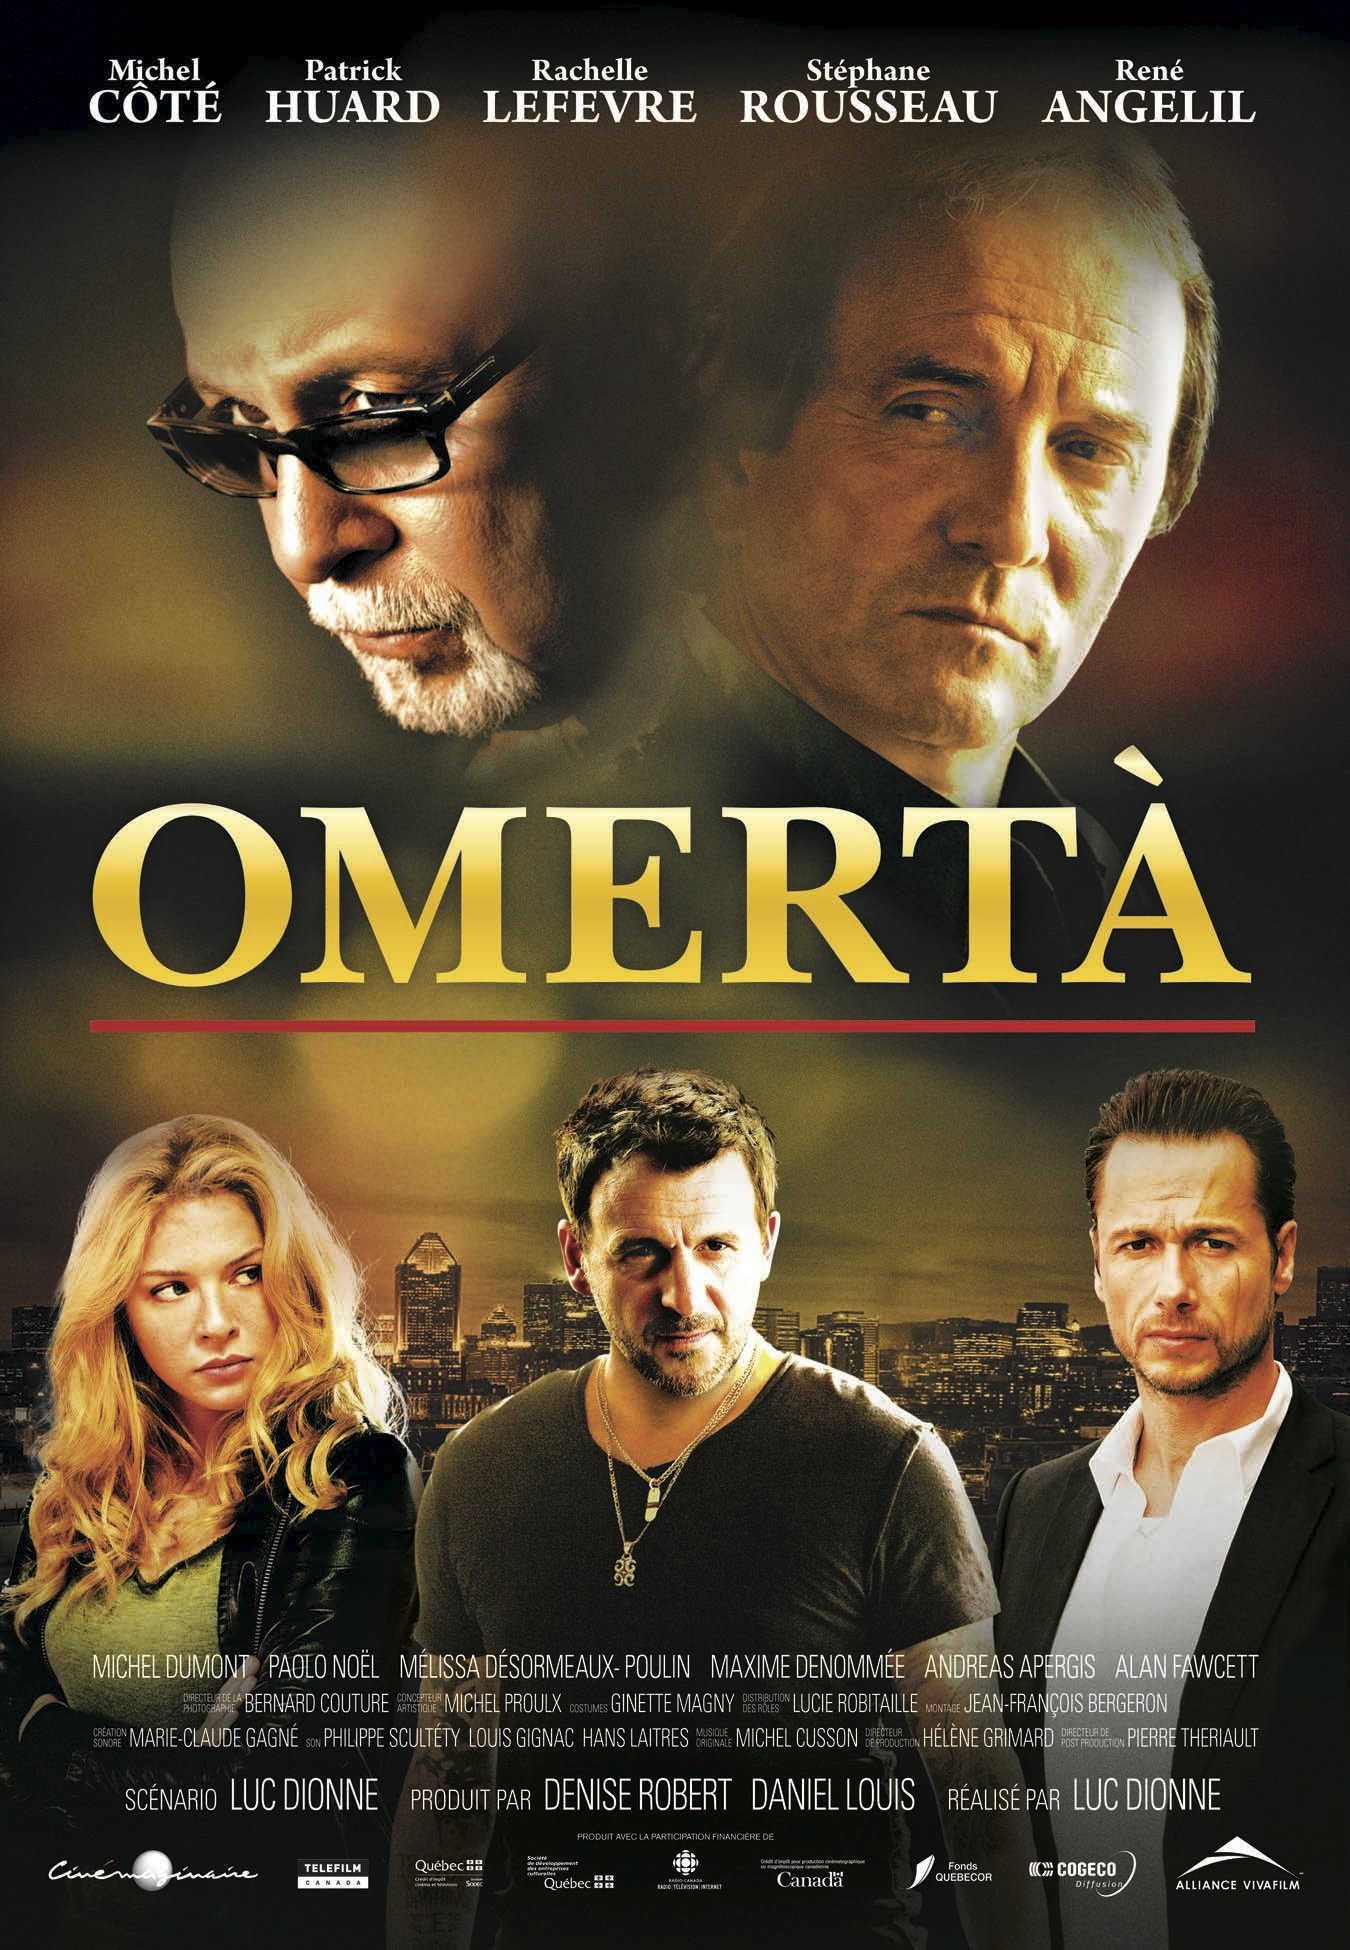 L'affiche du film Omertà